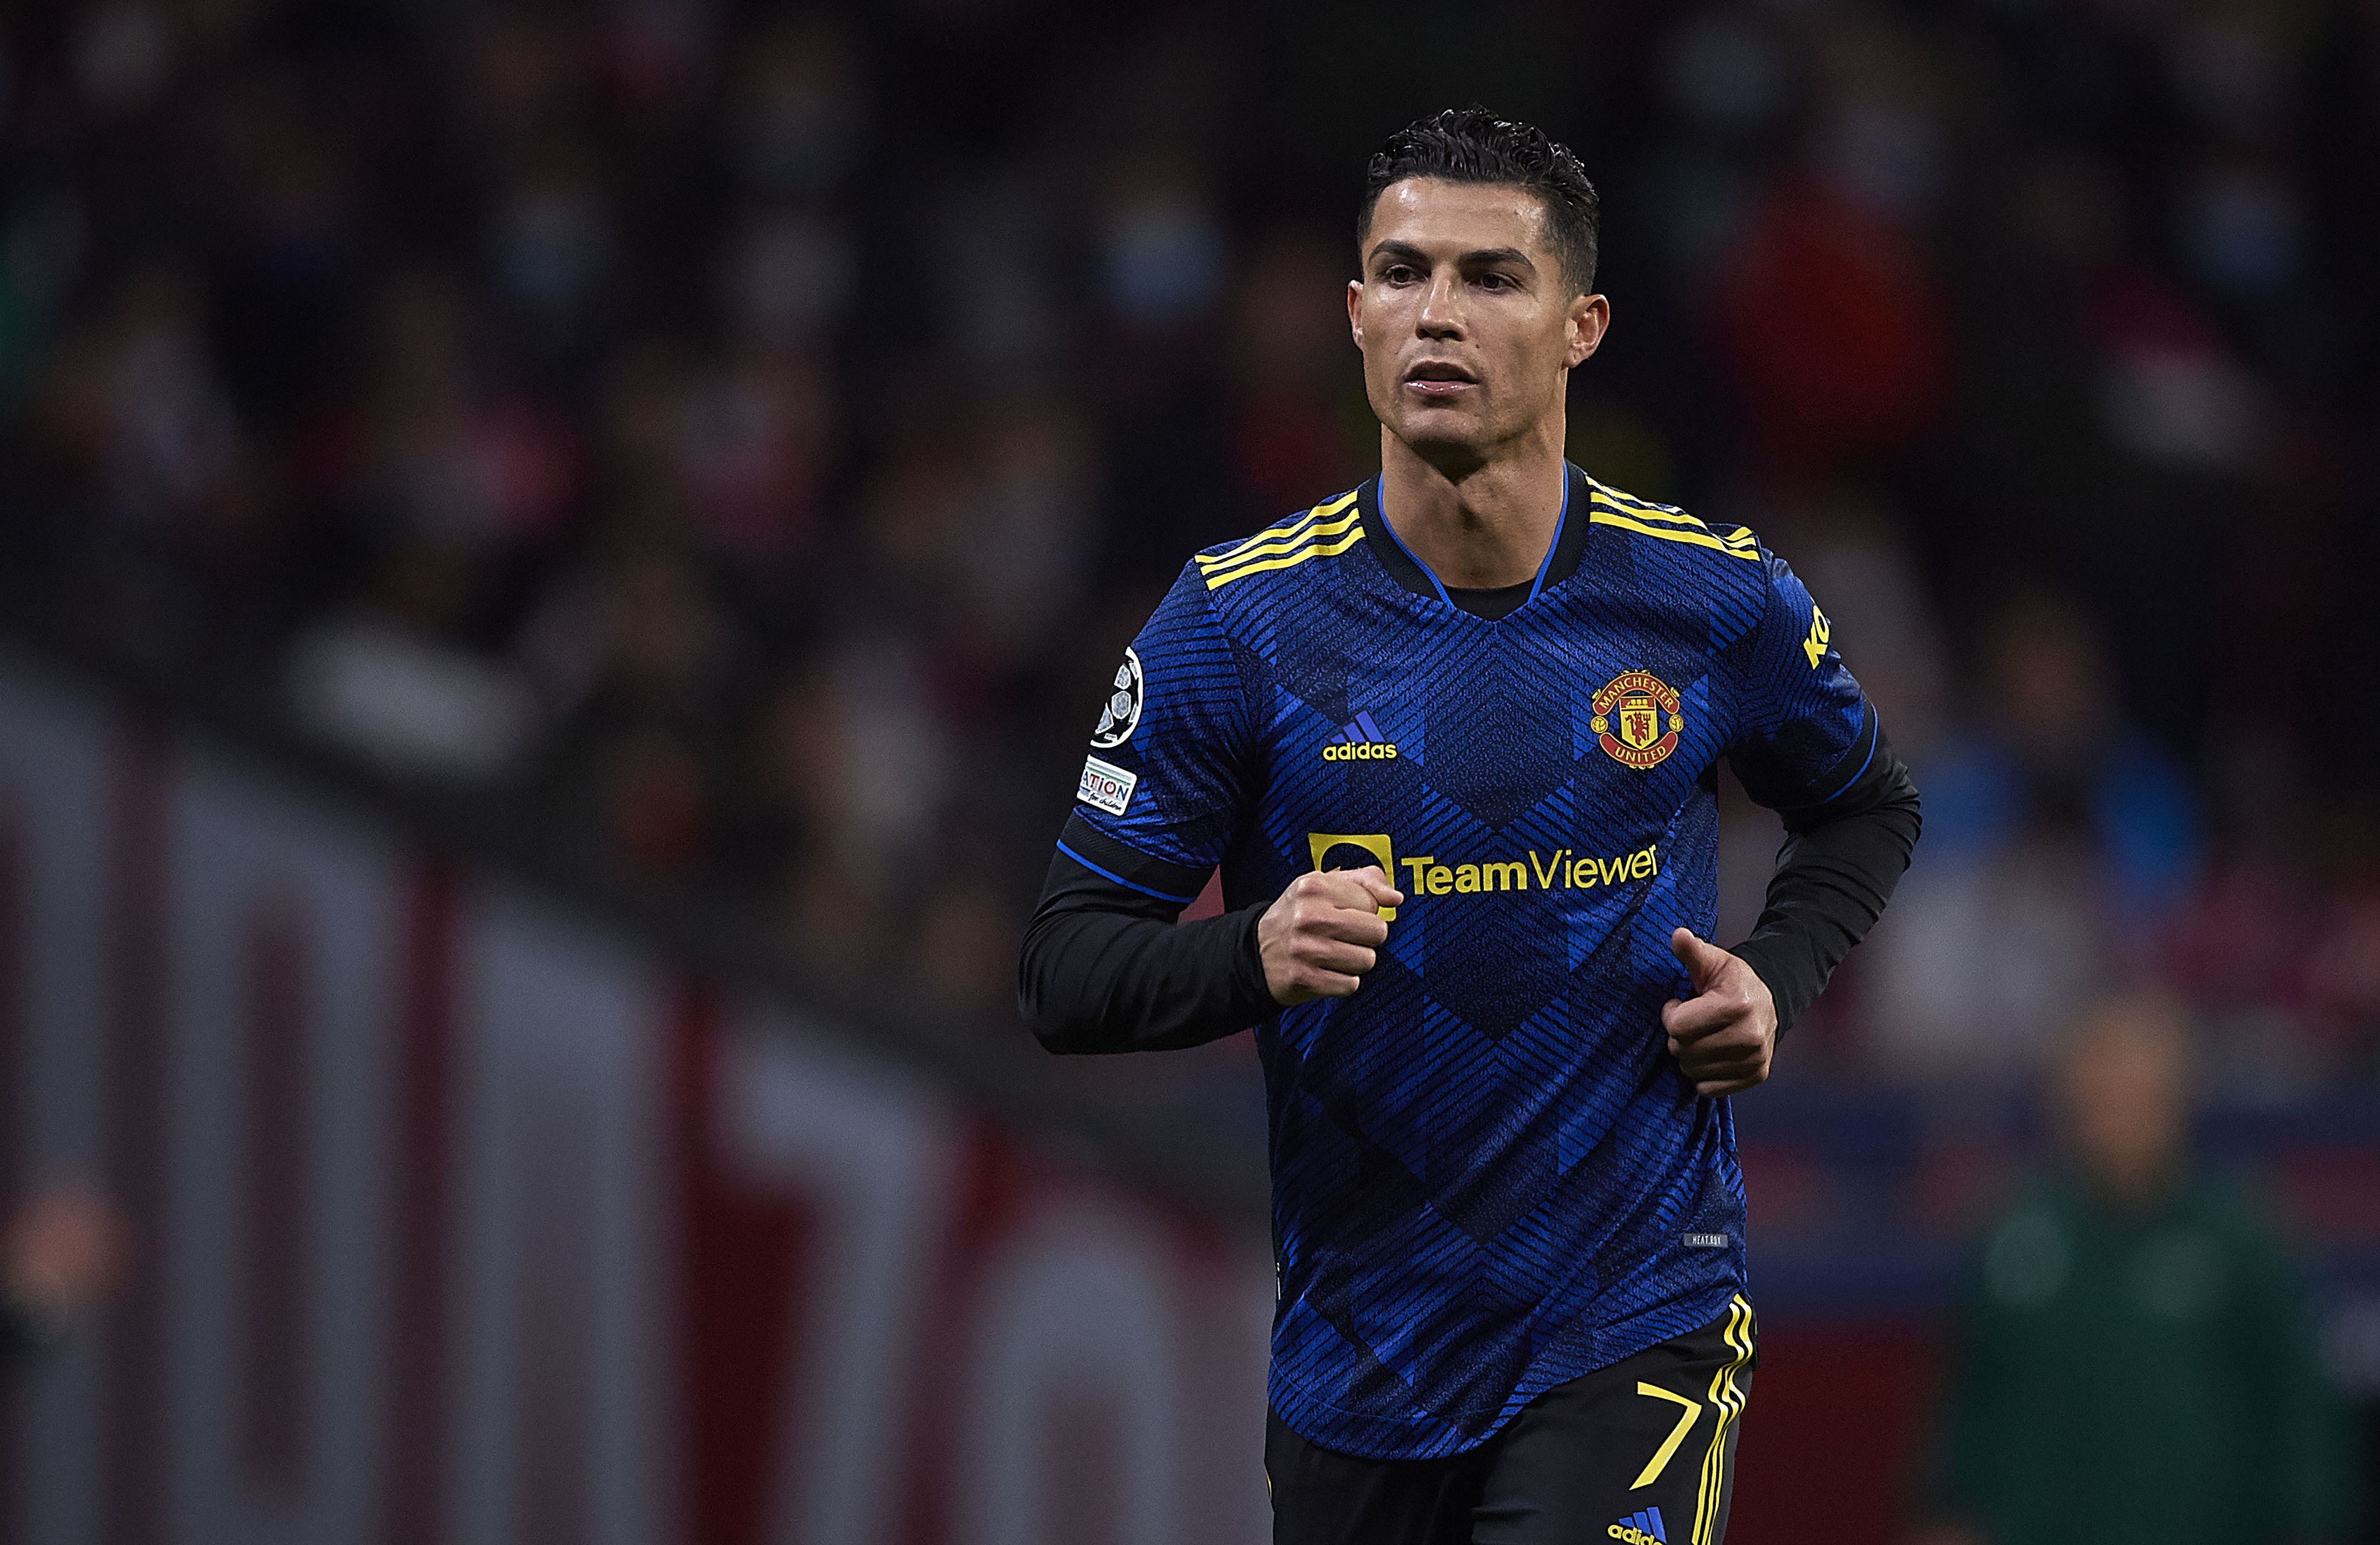 Ronaldo távozni akar a Manchester Unitedtől. Akár a Barcelonánál is kiköthet? / Fotó: Northfoto